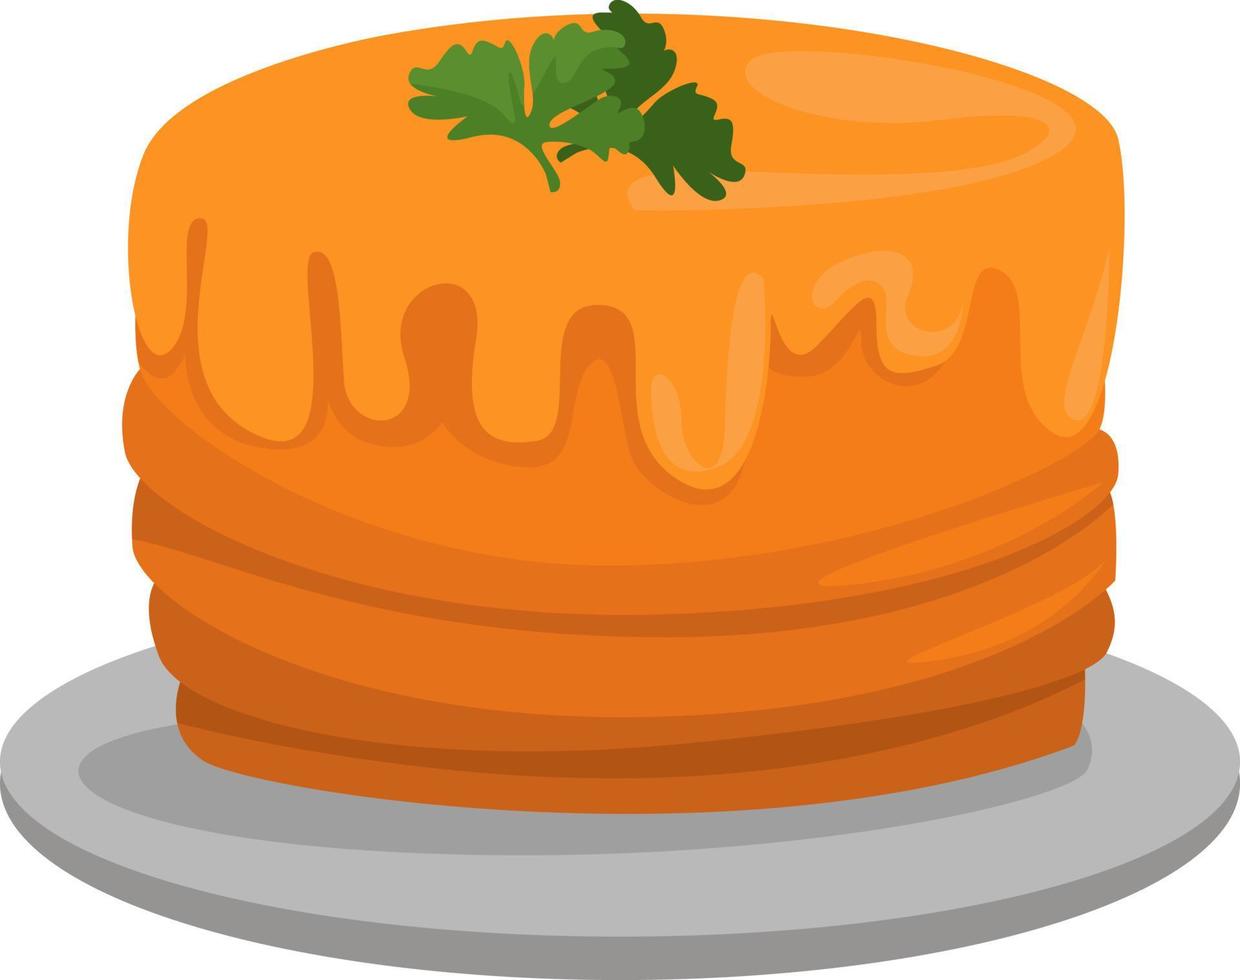 bolo de laranja, ilustração, vetor em fundo branco.